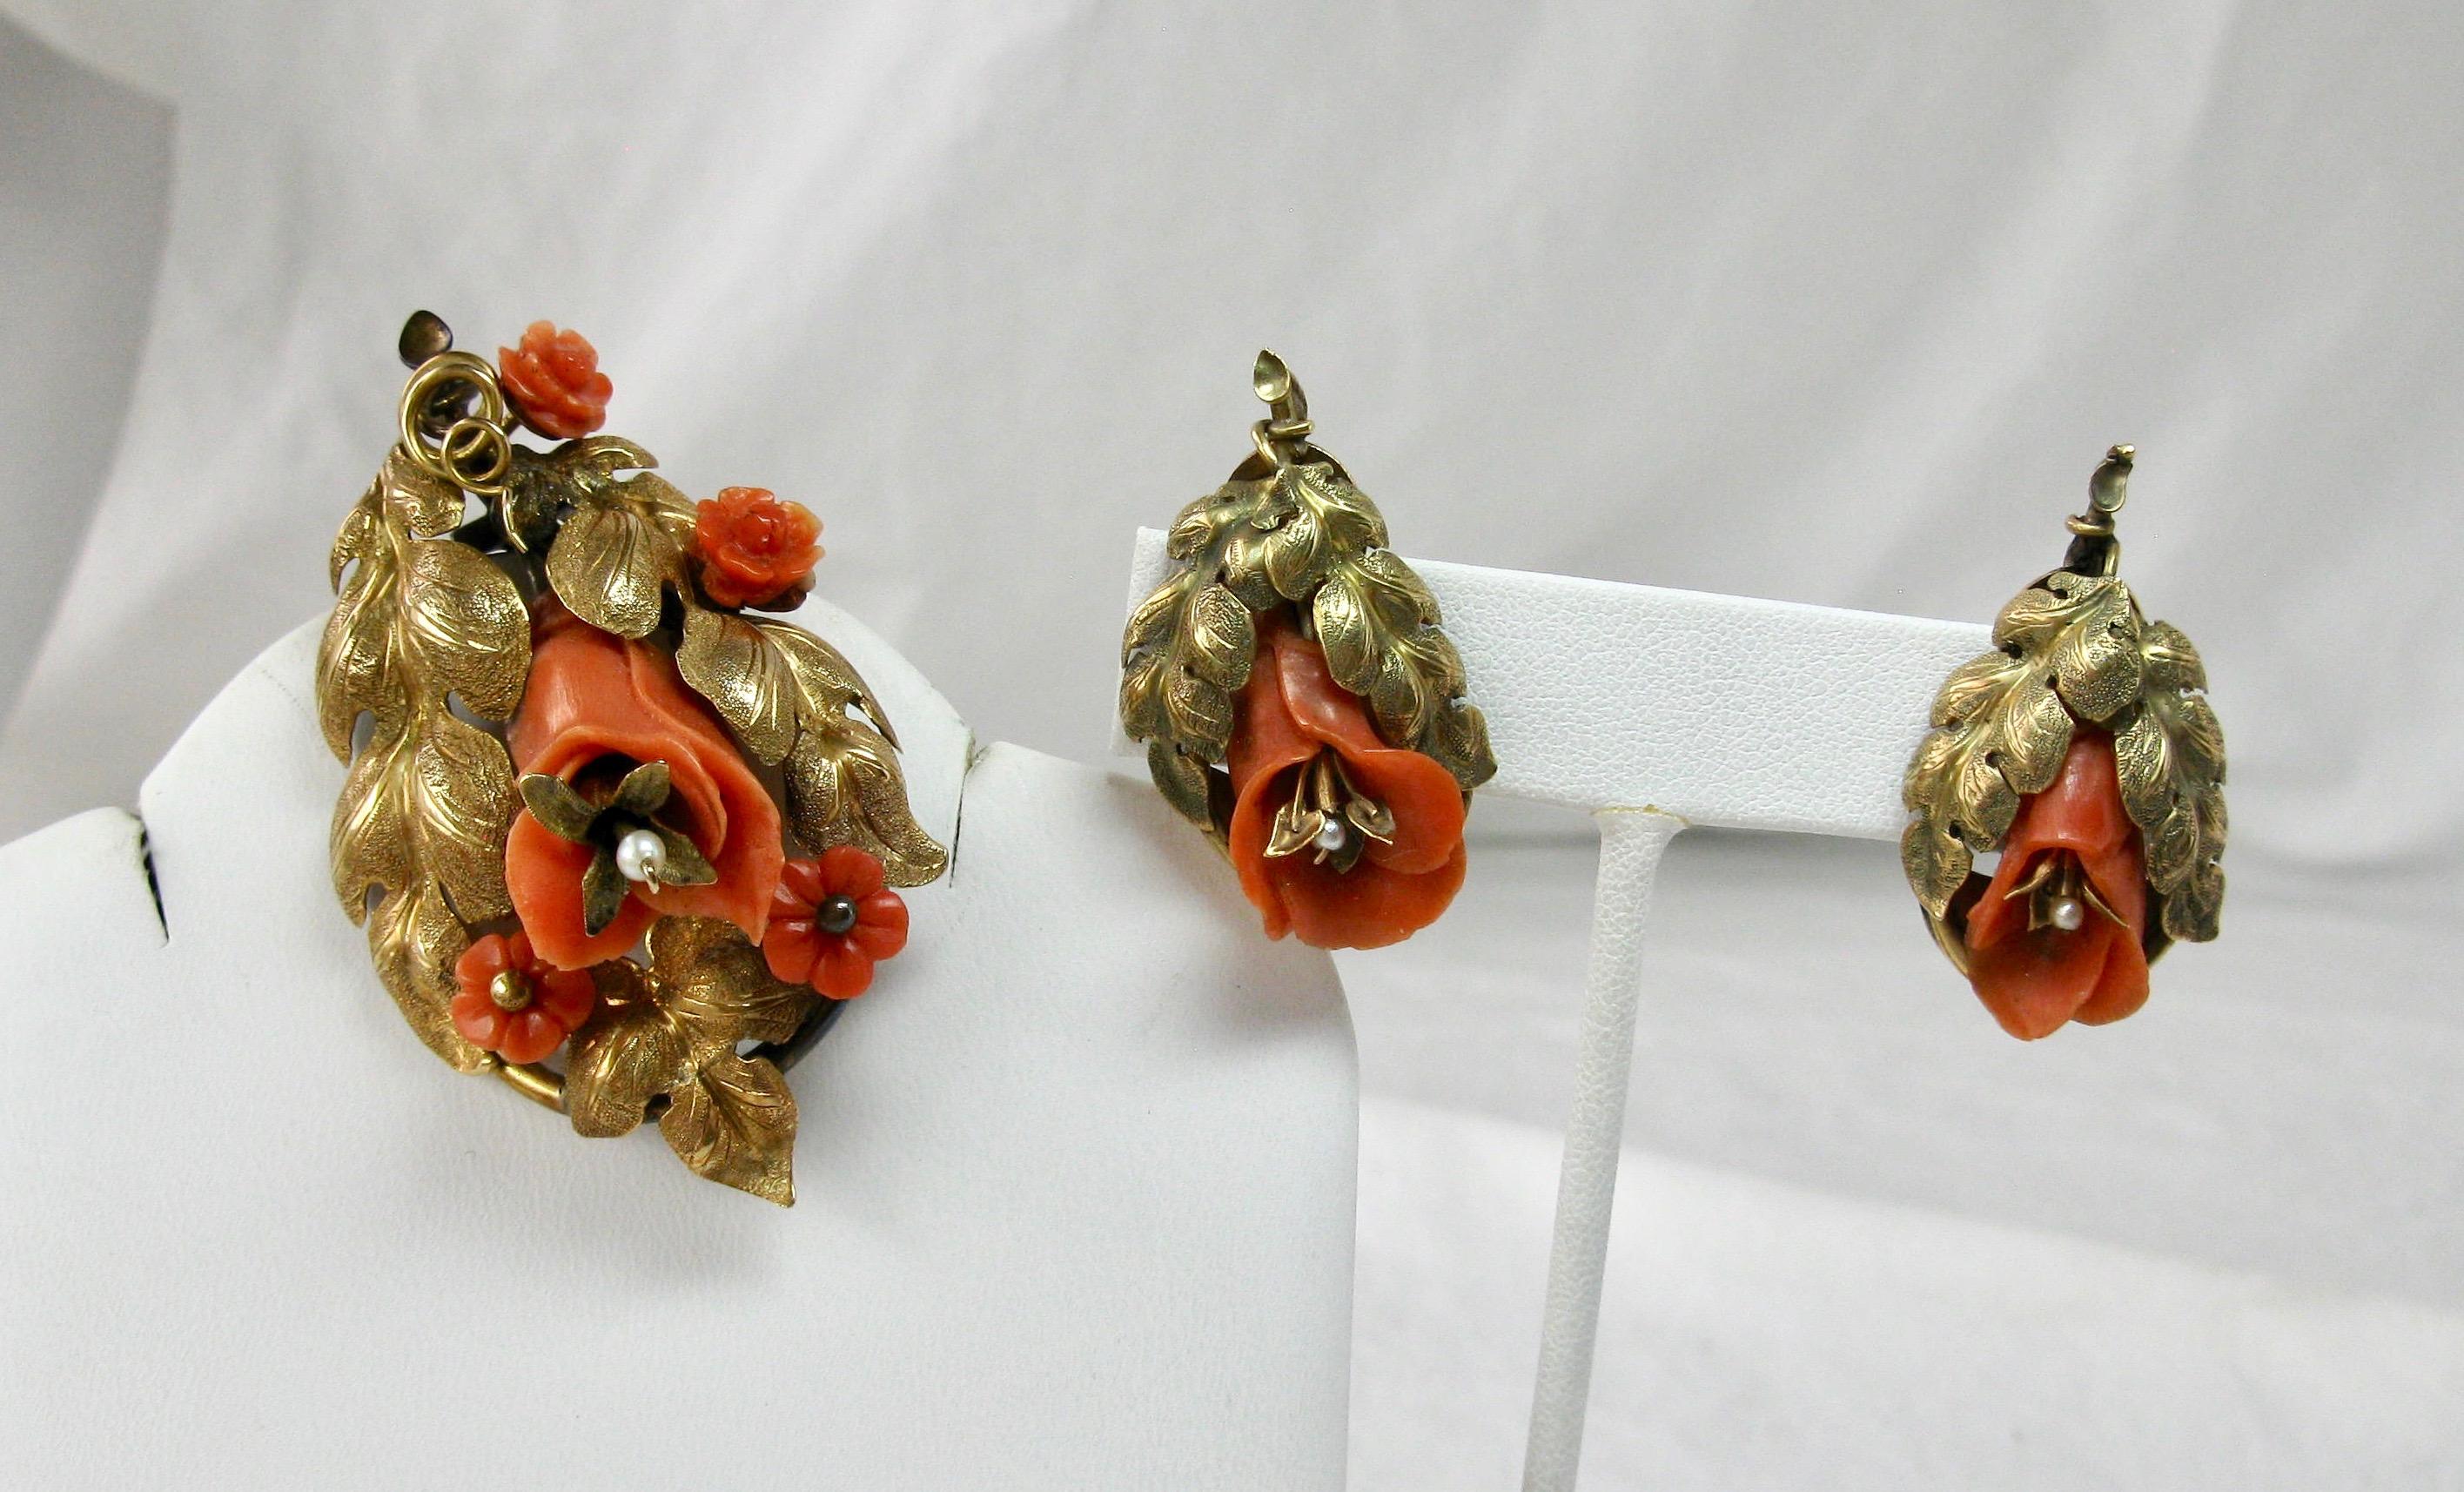 Dies ist ein seltenes Paar von Museum Qualität Etruscan Revival viktorianischen Korallen Ohrringe und Brosche.  Das Parure-Set hat wunderschöne handgeschnitzte dreidimensionale Blumen aus natürlicher Koralle.  Die Schnitzerei der Blumen ist absolut